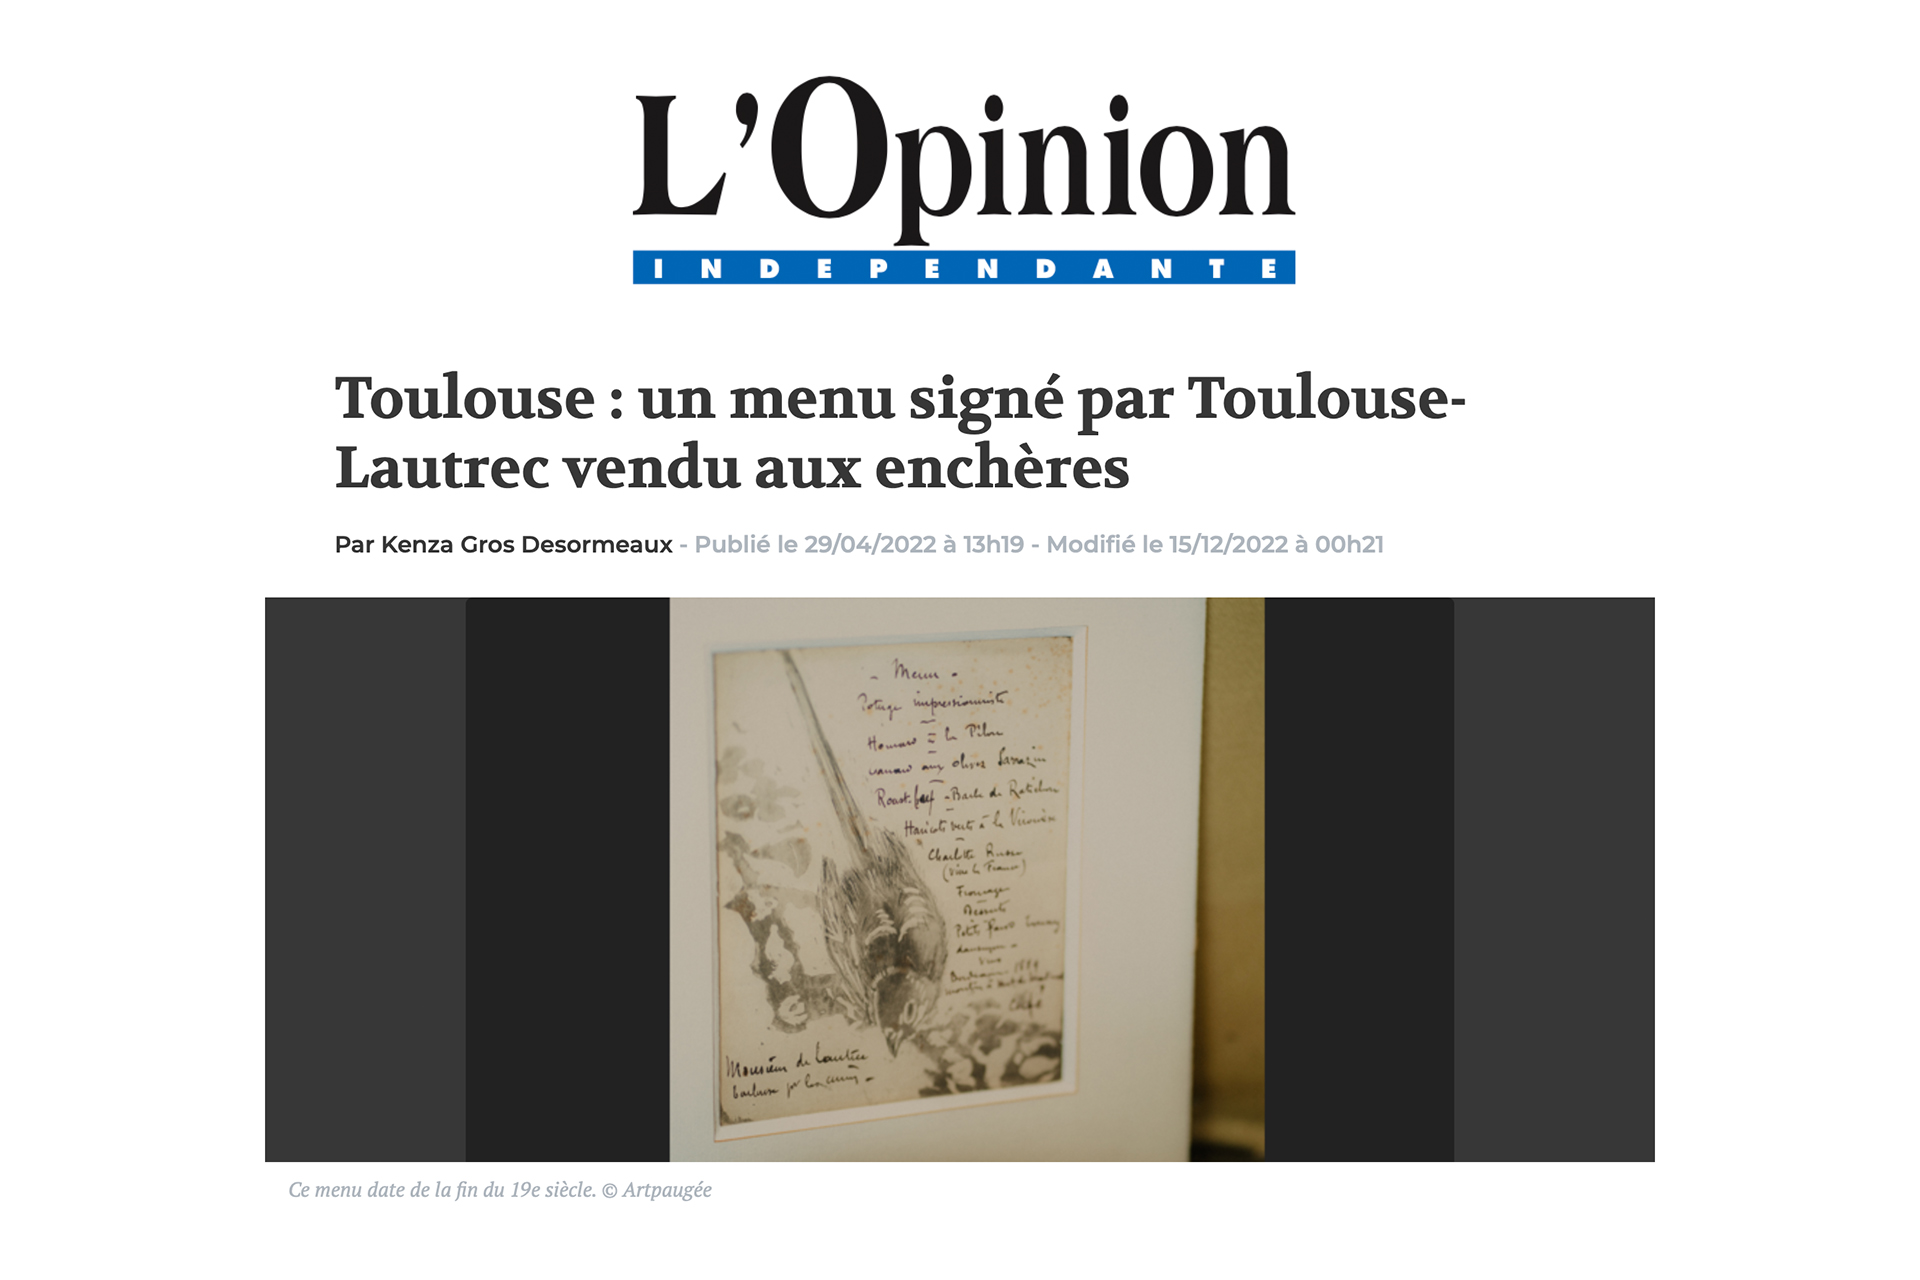 « Toulouse : un menu signé par Toulouse-Lautrec vendu aux enchères », 29 avril 2022